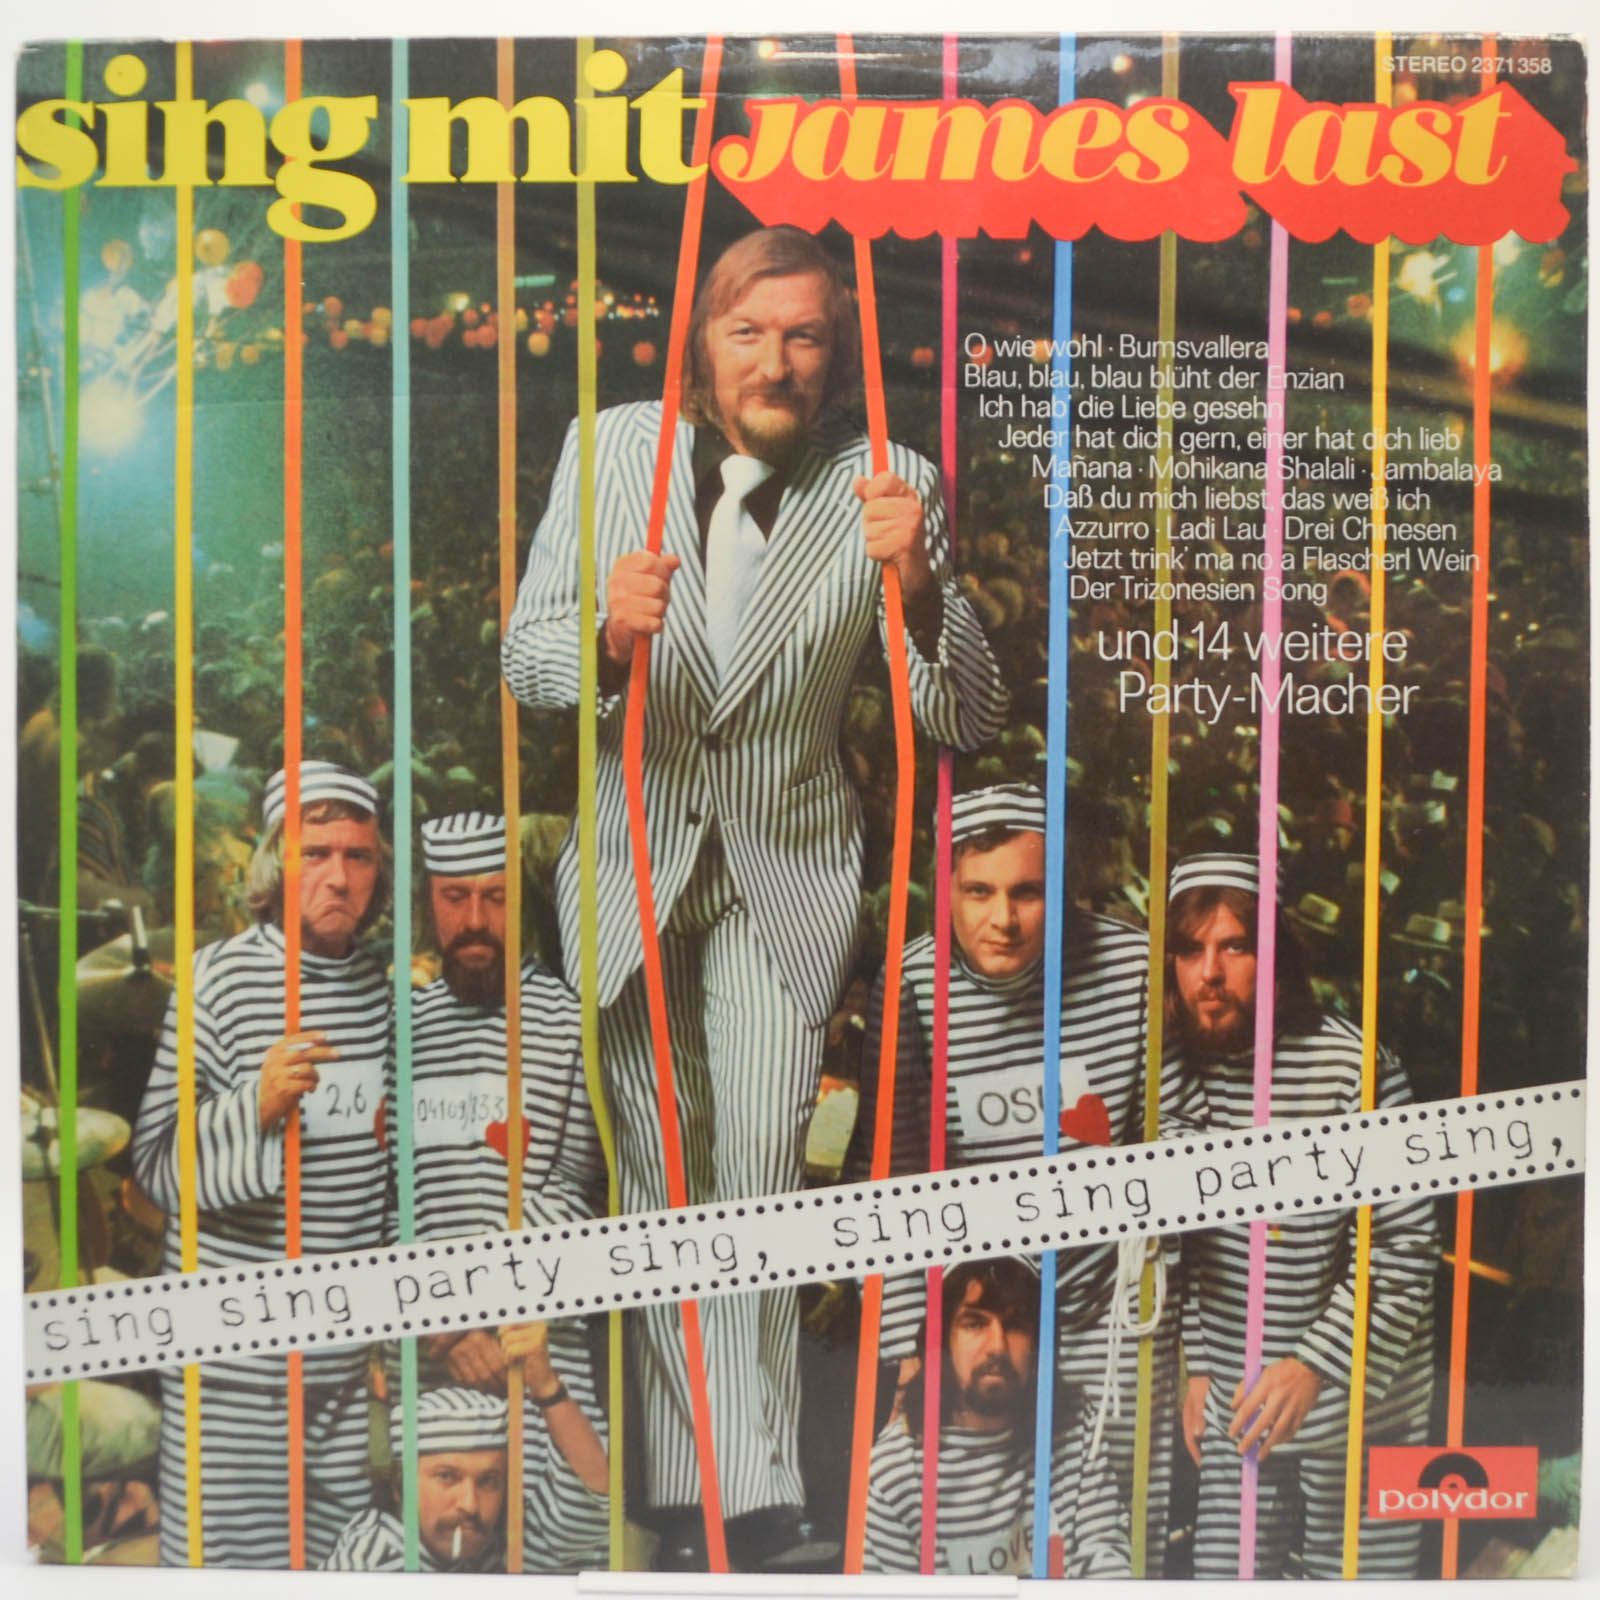 James Last — Sing Mit, 1973